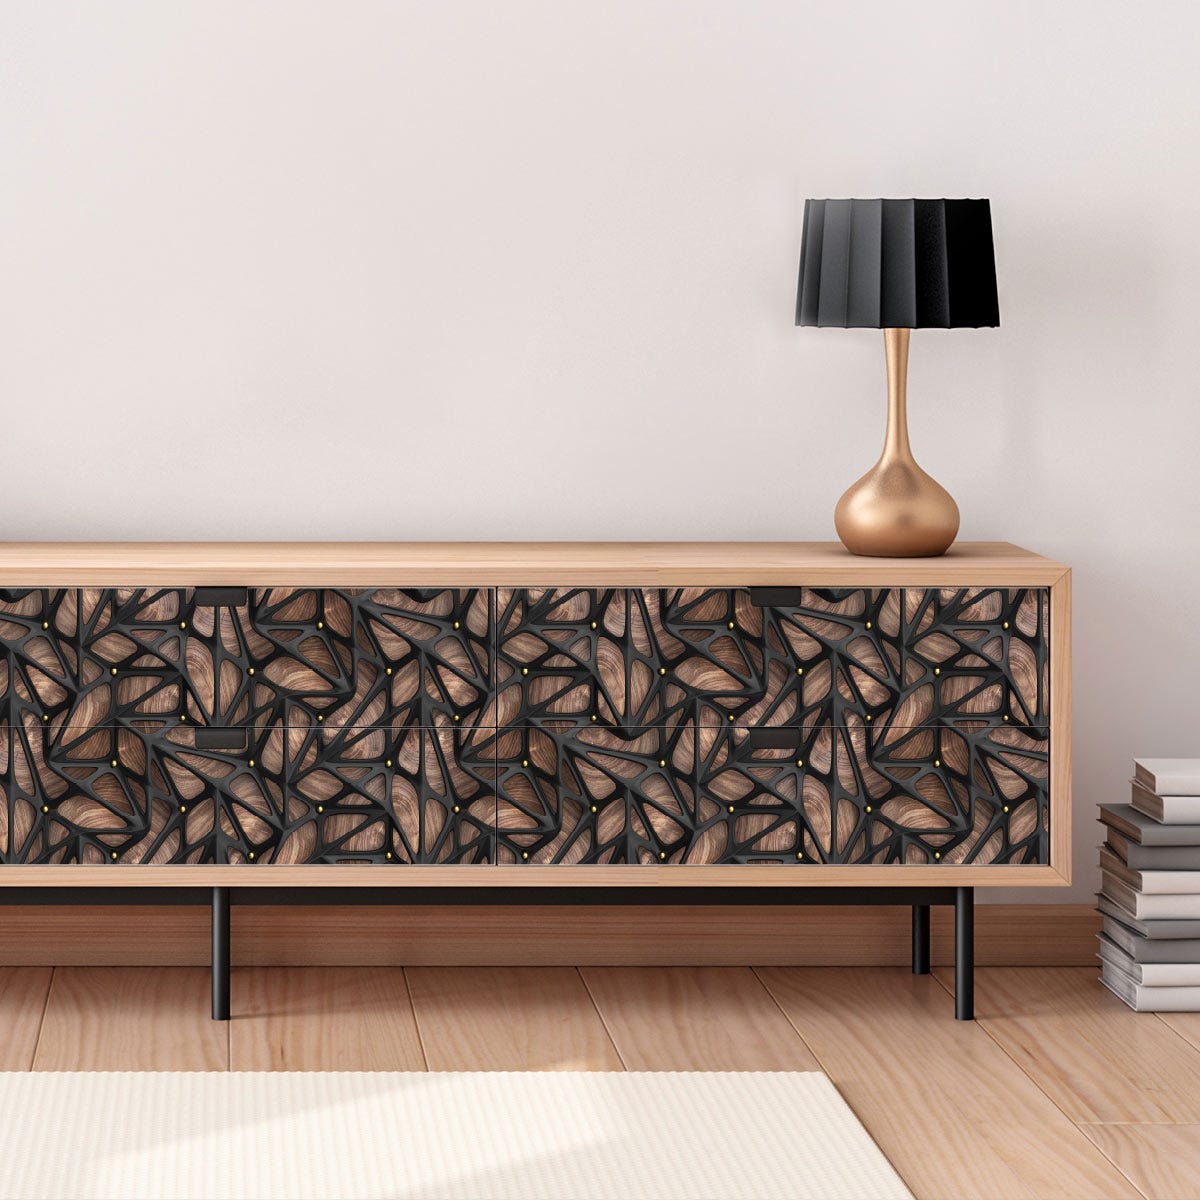 Vinilo muebles escandinavos diseño de madera negro - adhesivo de